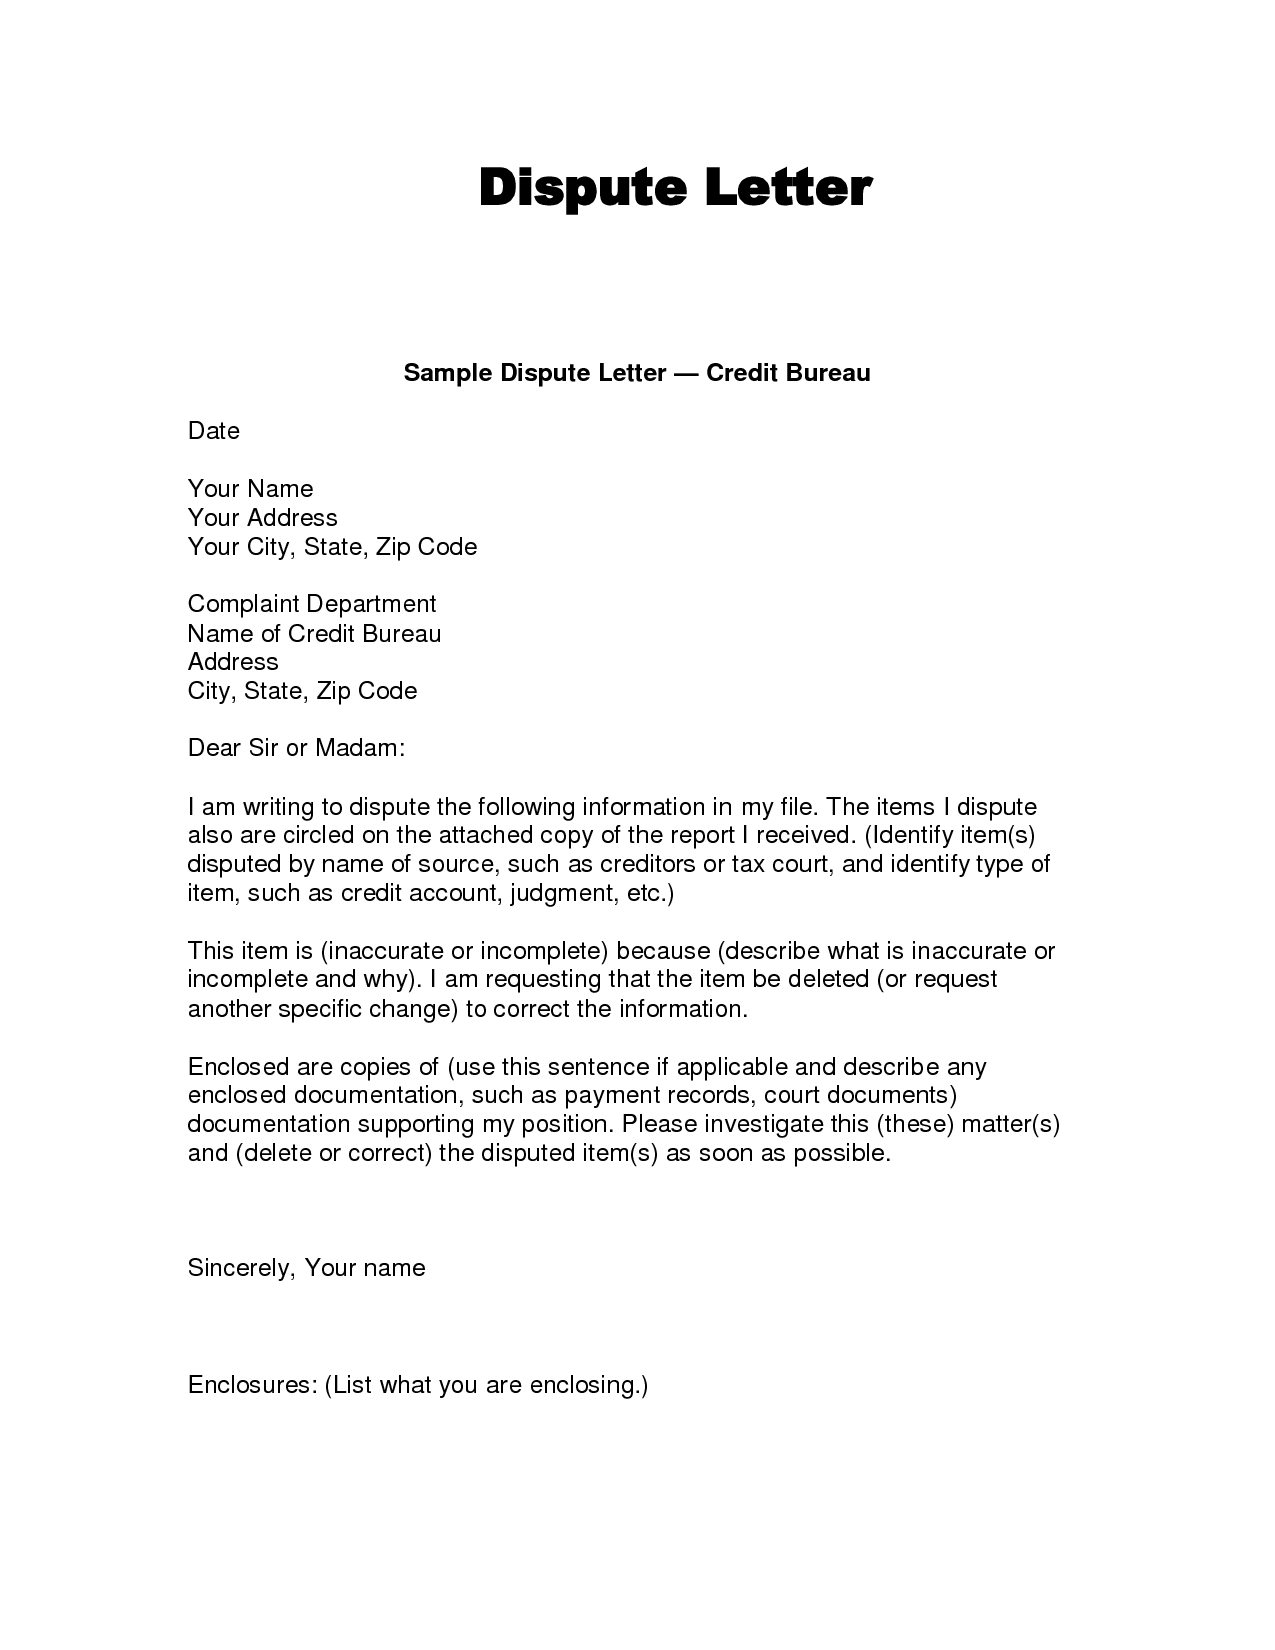 writing dispute letter format credit bureaus dispute sample 609 dispute letter